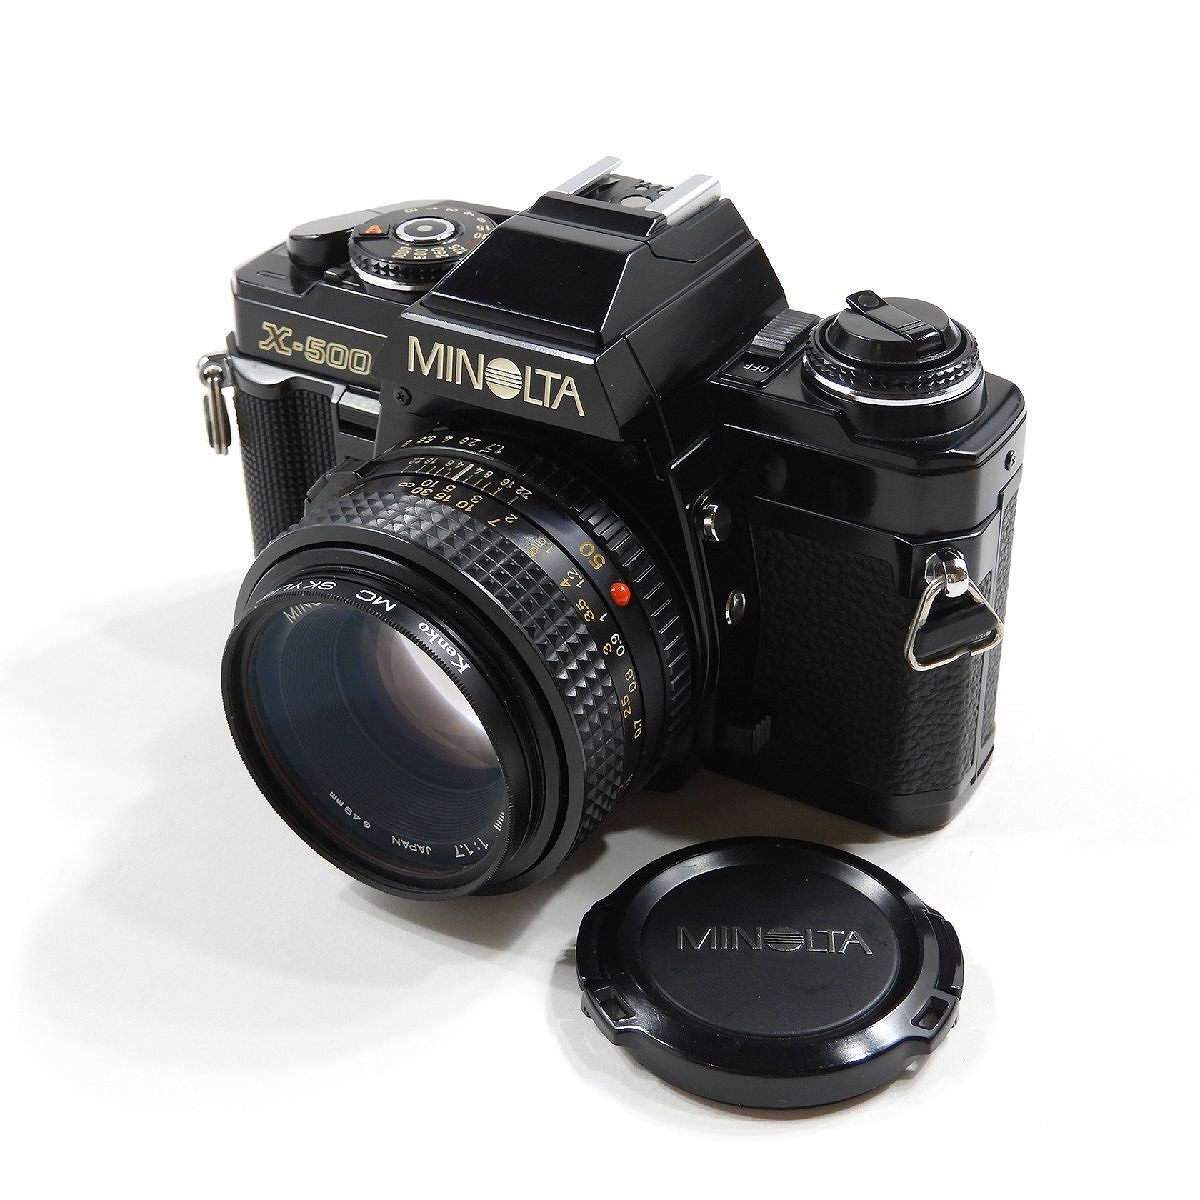 MINOLTA ミノルタ X-500 一眼レフ フィルムカメラ MD 50mm 1:1.7